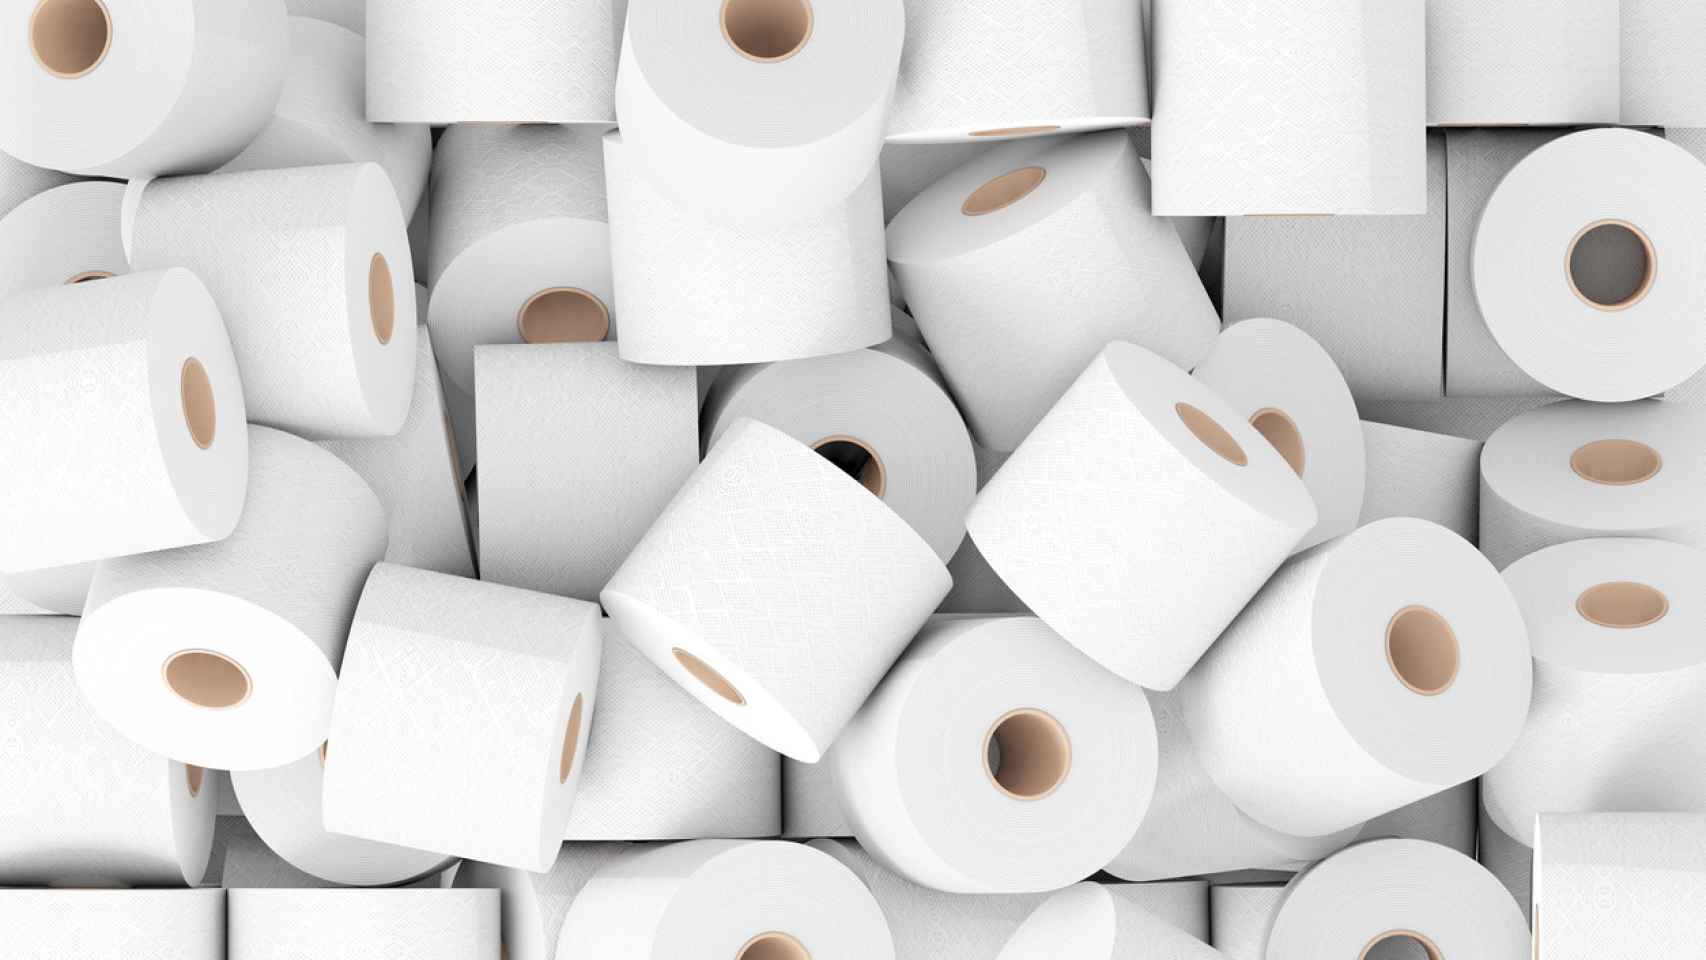 Imagen de rollos de papel higiénico